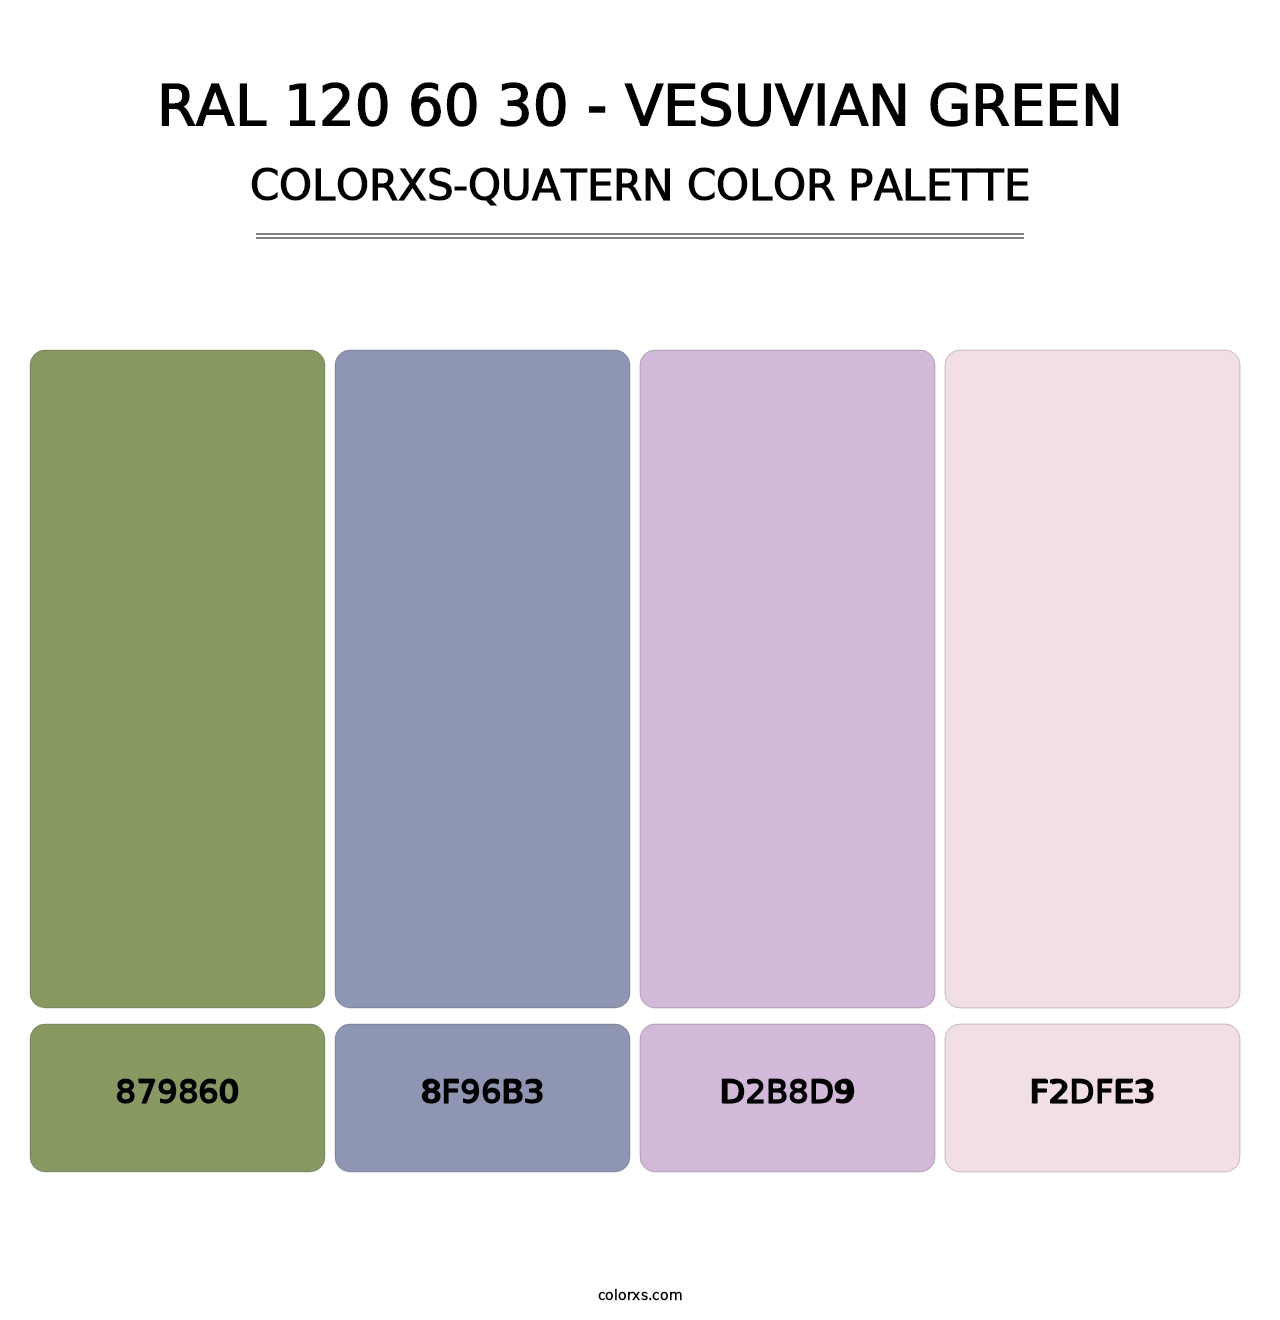 RAL 120 60 30 - Vesuvian Green - Colorxs Quatern Palette